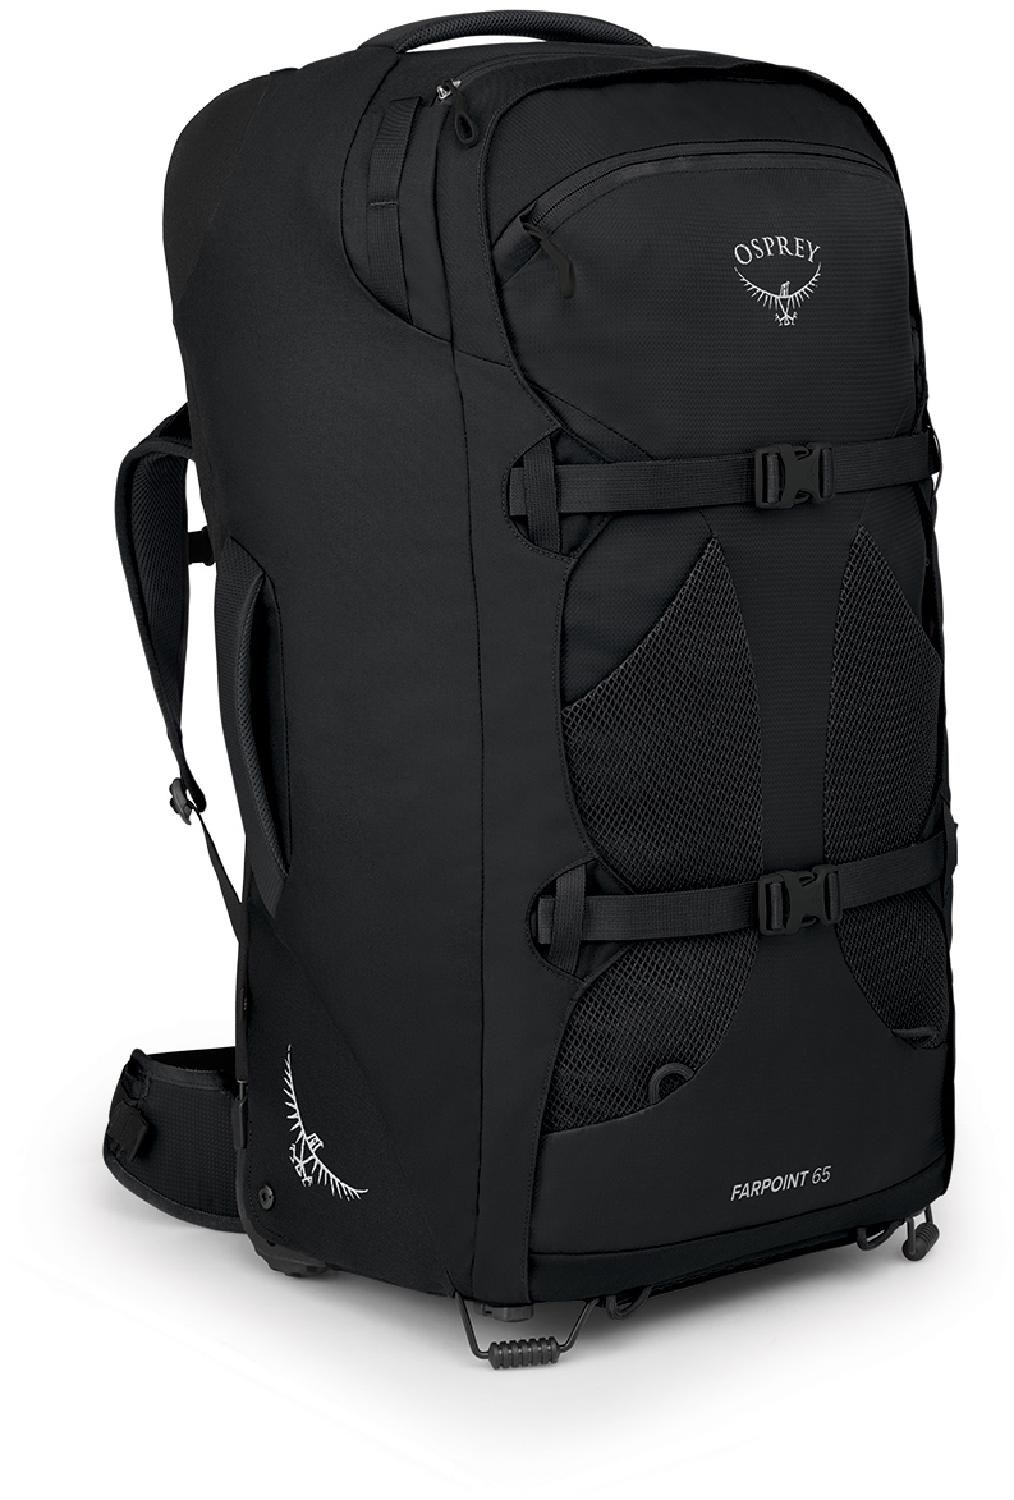 рюкзак farpoint 70 2 pack osprey цвет tunnel vision grey Дорожный рюкзак Farpoint 65 на колесиках — мужской Osprey, черный